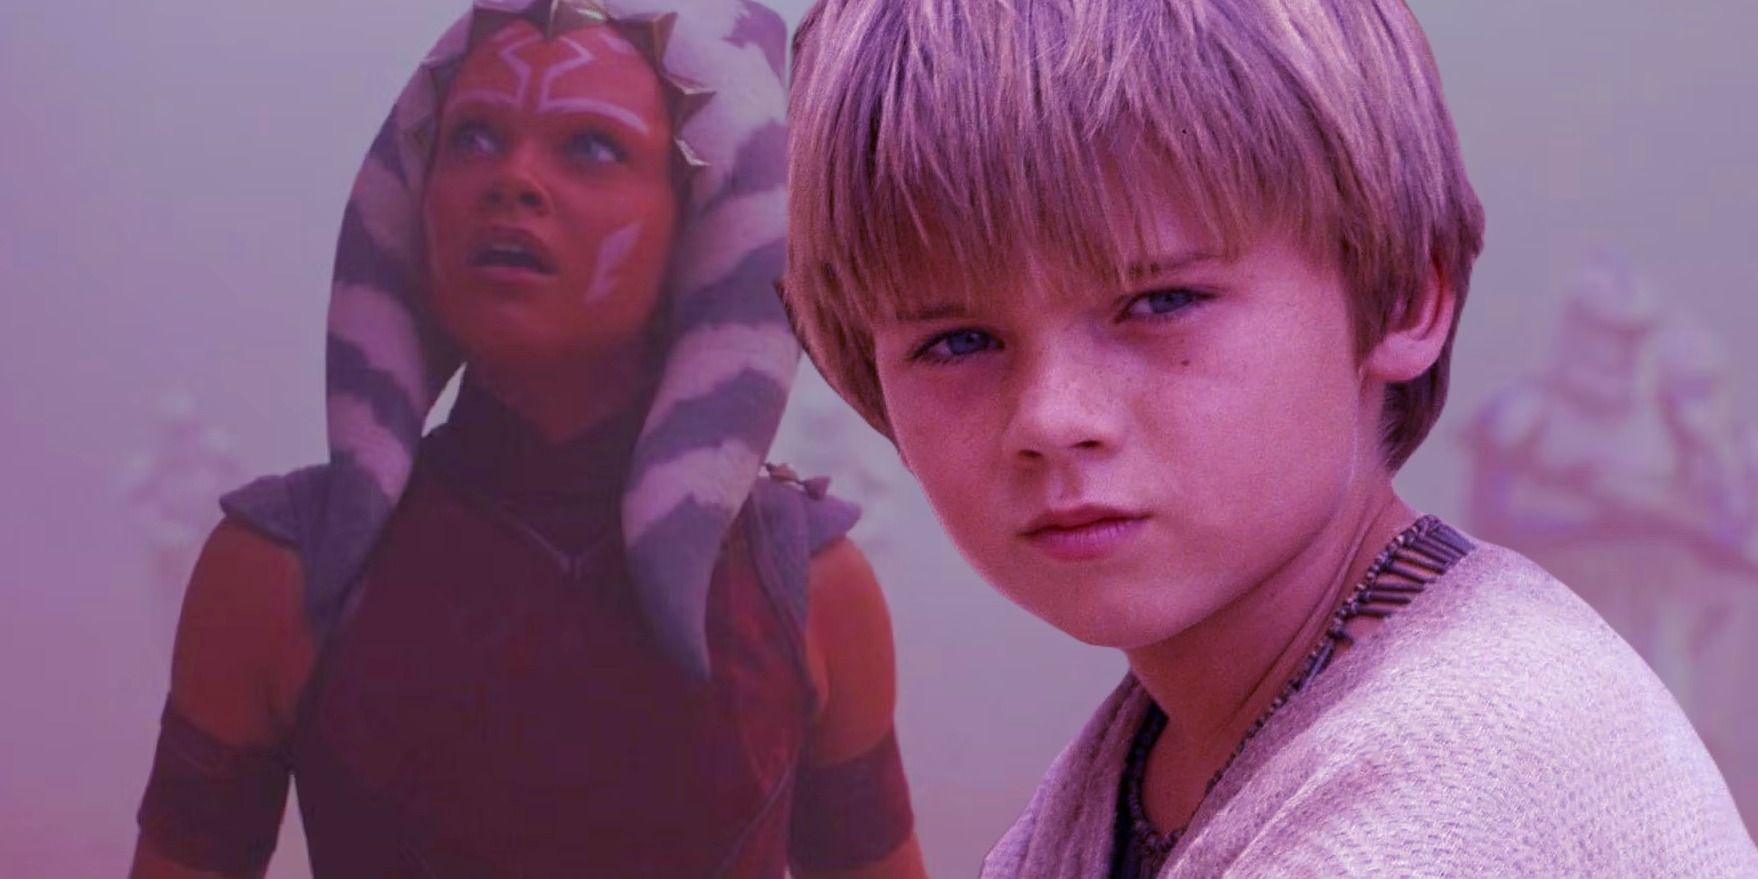 25 años después de La amenaza fantasma, Star Wars finalmente está acertando con los personajes infantiles